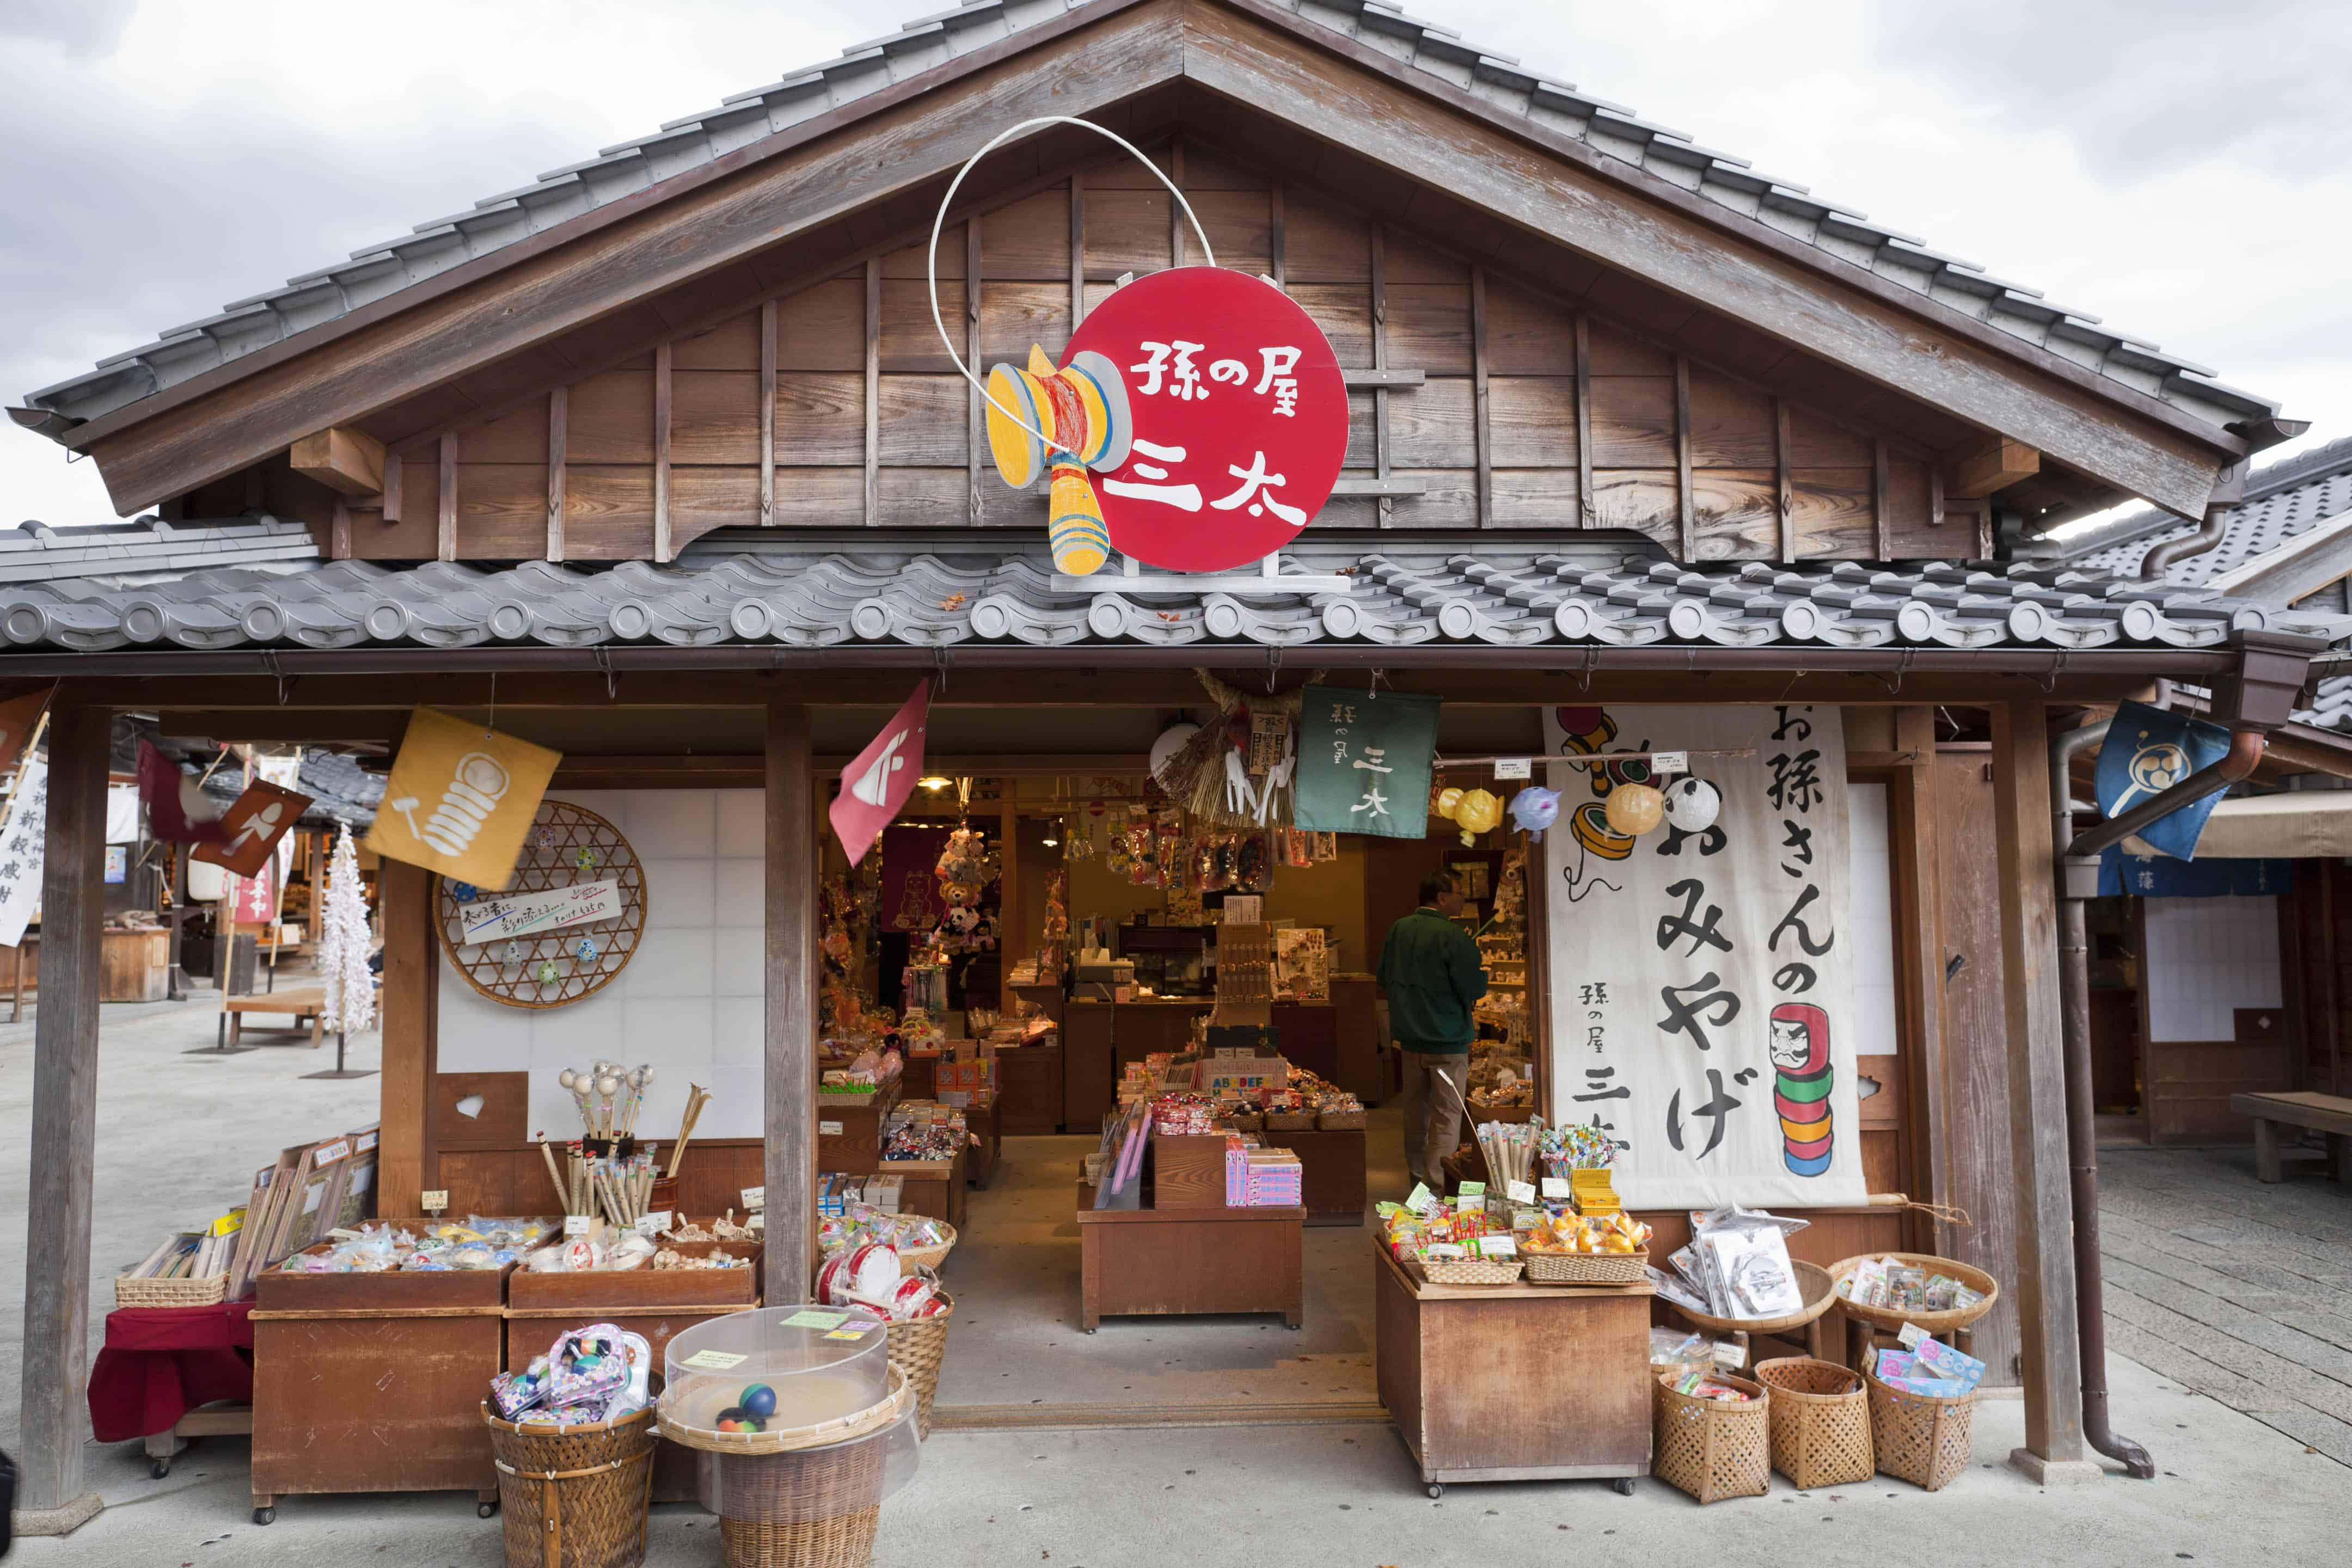 ร้านของเล่นแบบย้อนยุคของญี่ปุ่น ที่ ตลาดโอคาเกะ (Okage Yokocho)